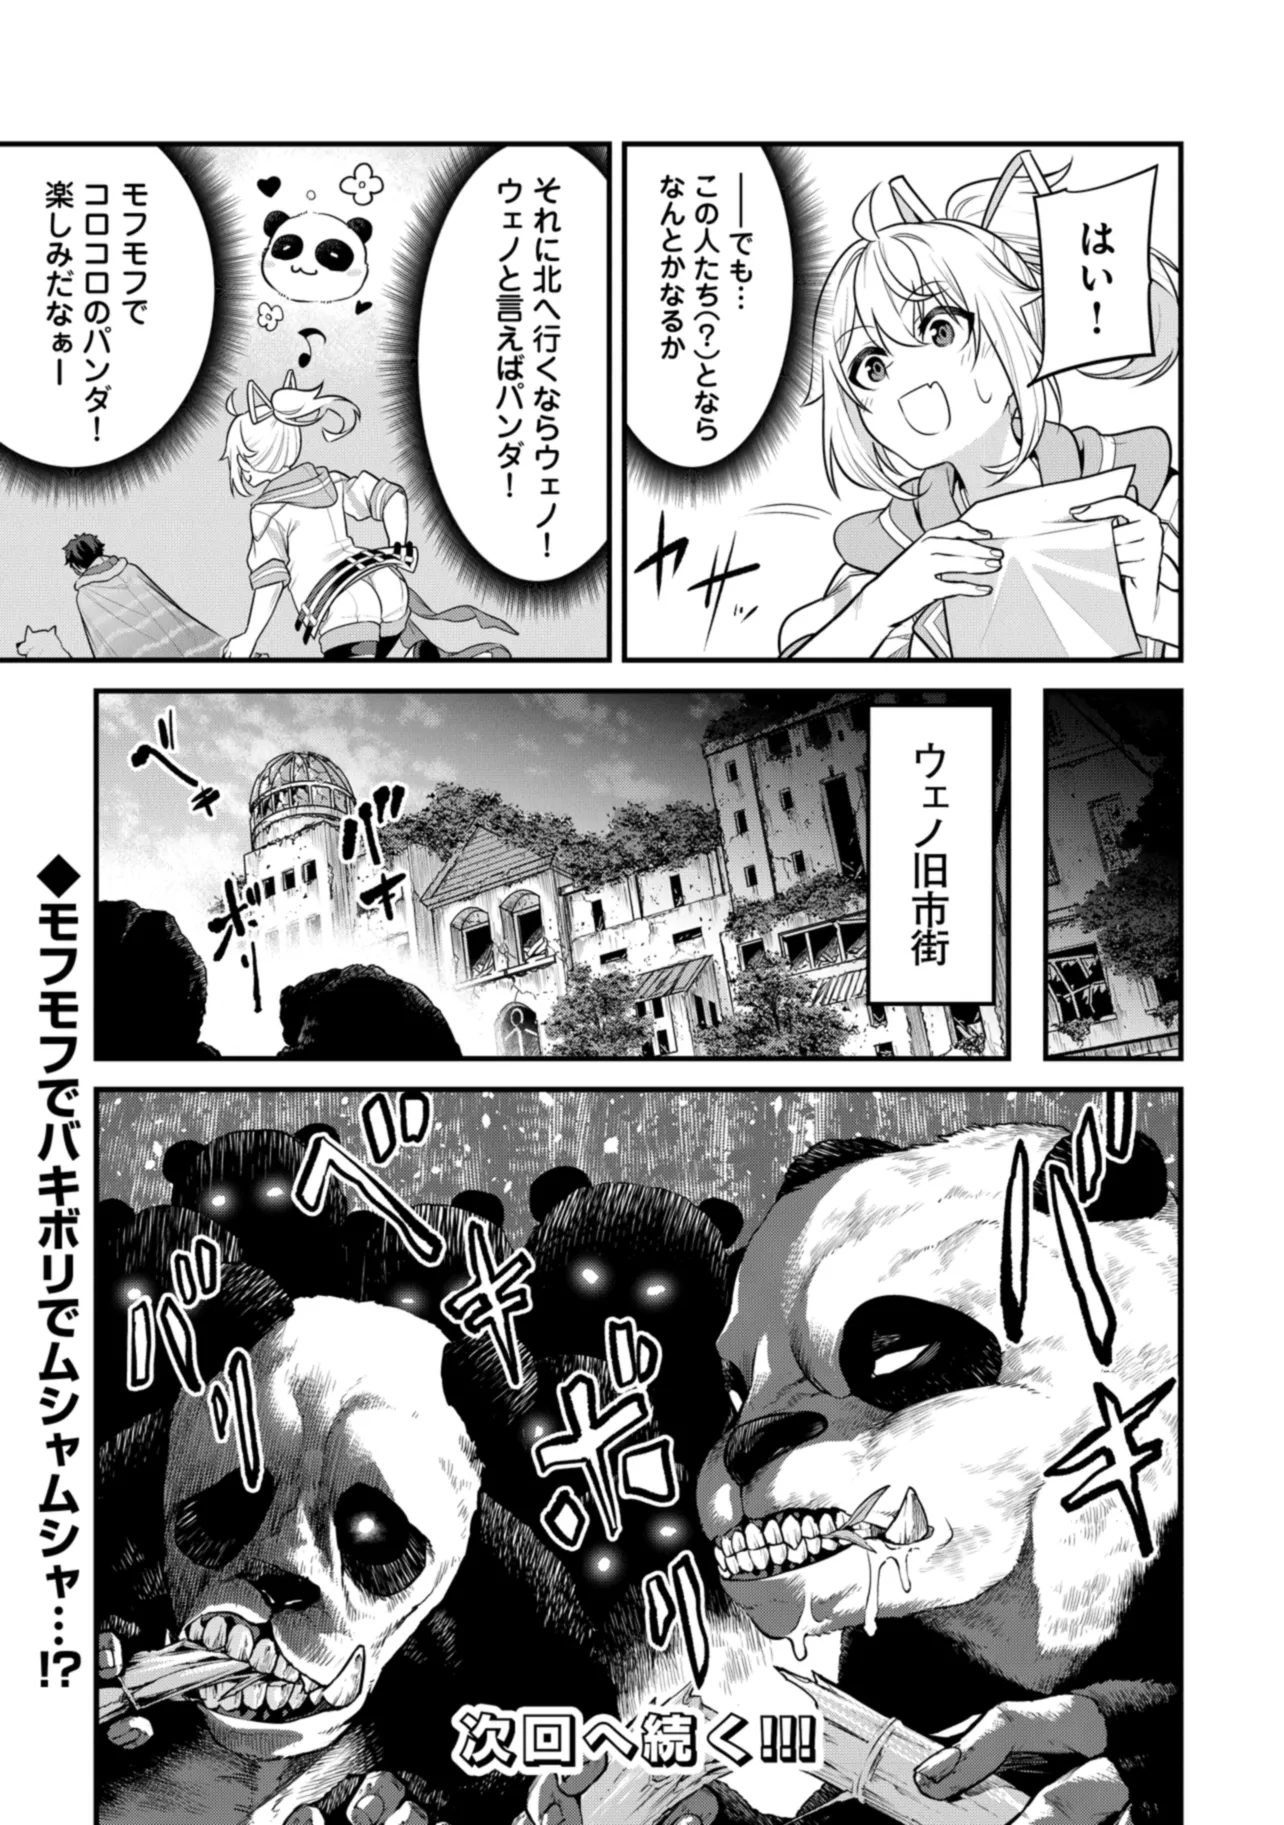 Joppare Aomori no Hoshi - Chapter 4 - Page 30